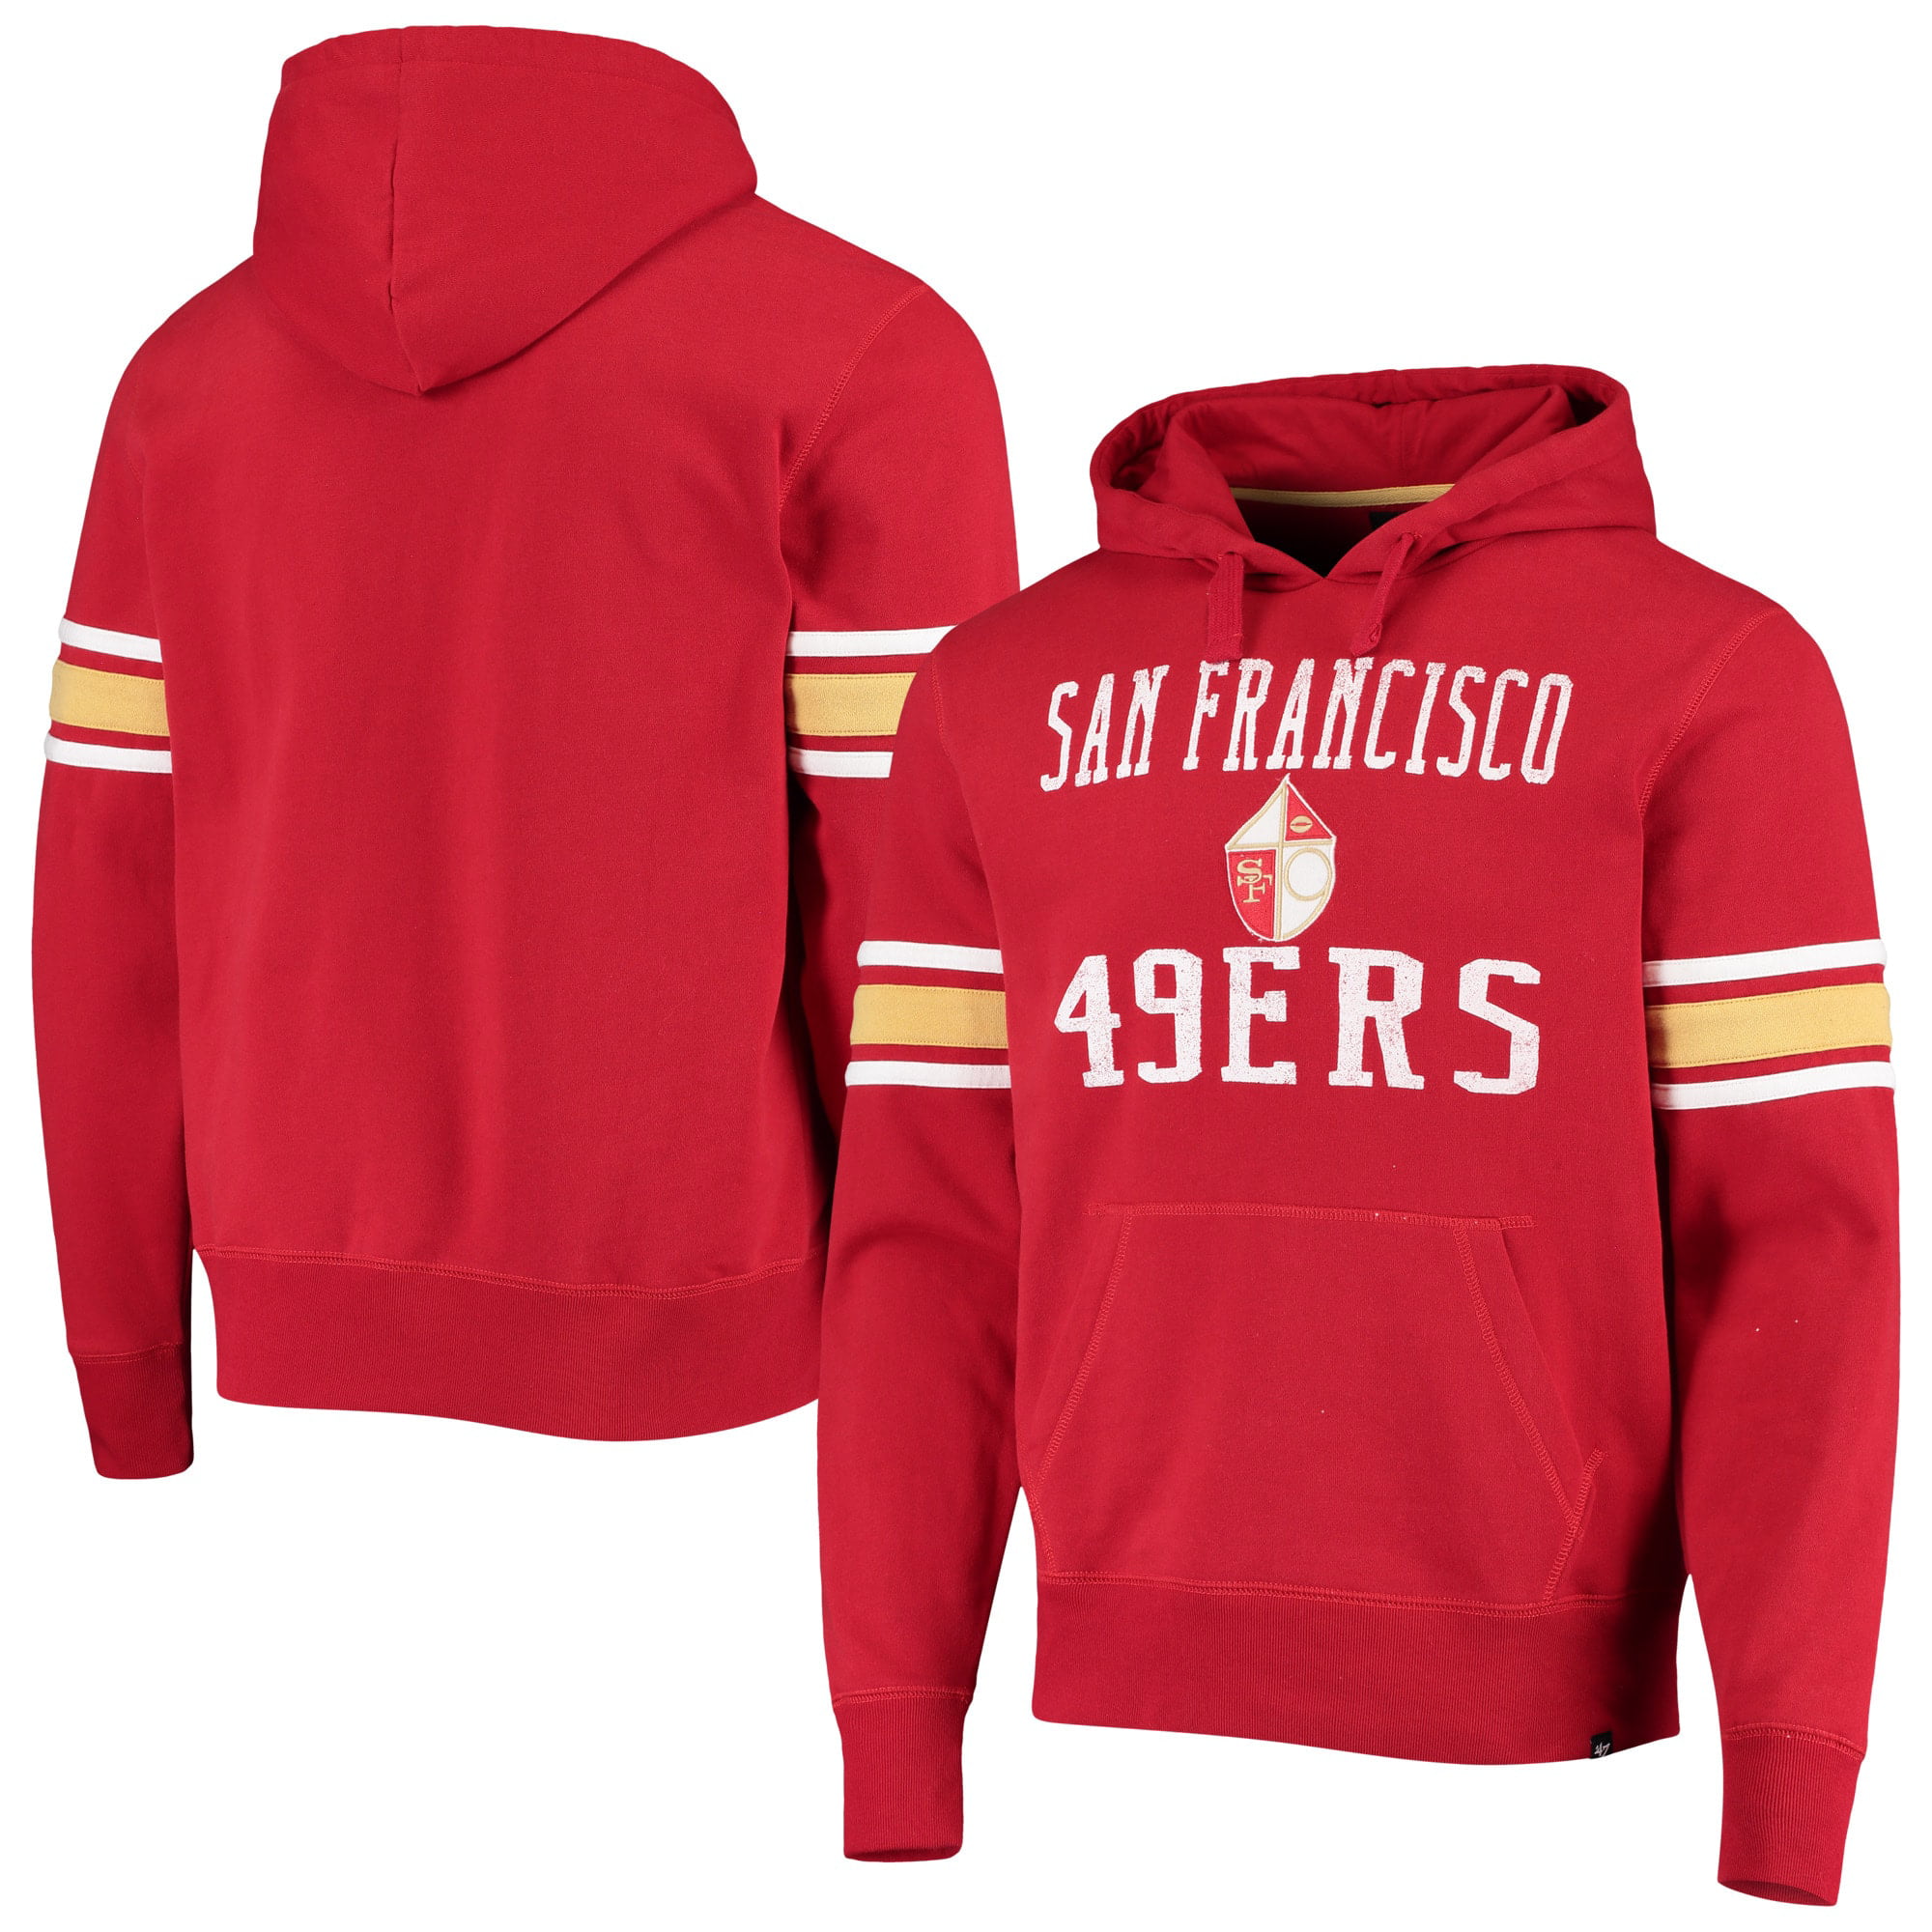 San Francisco 49ers Thicken Hoodie Football Sweatshirts Casual Warm Fleece Coat